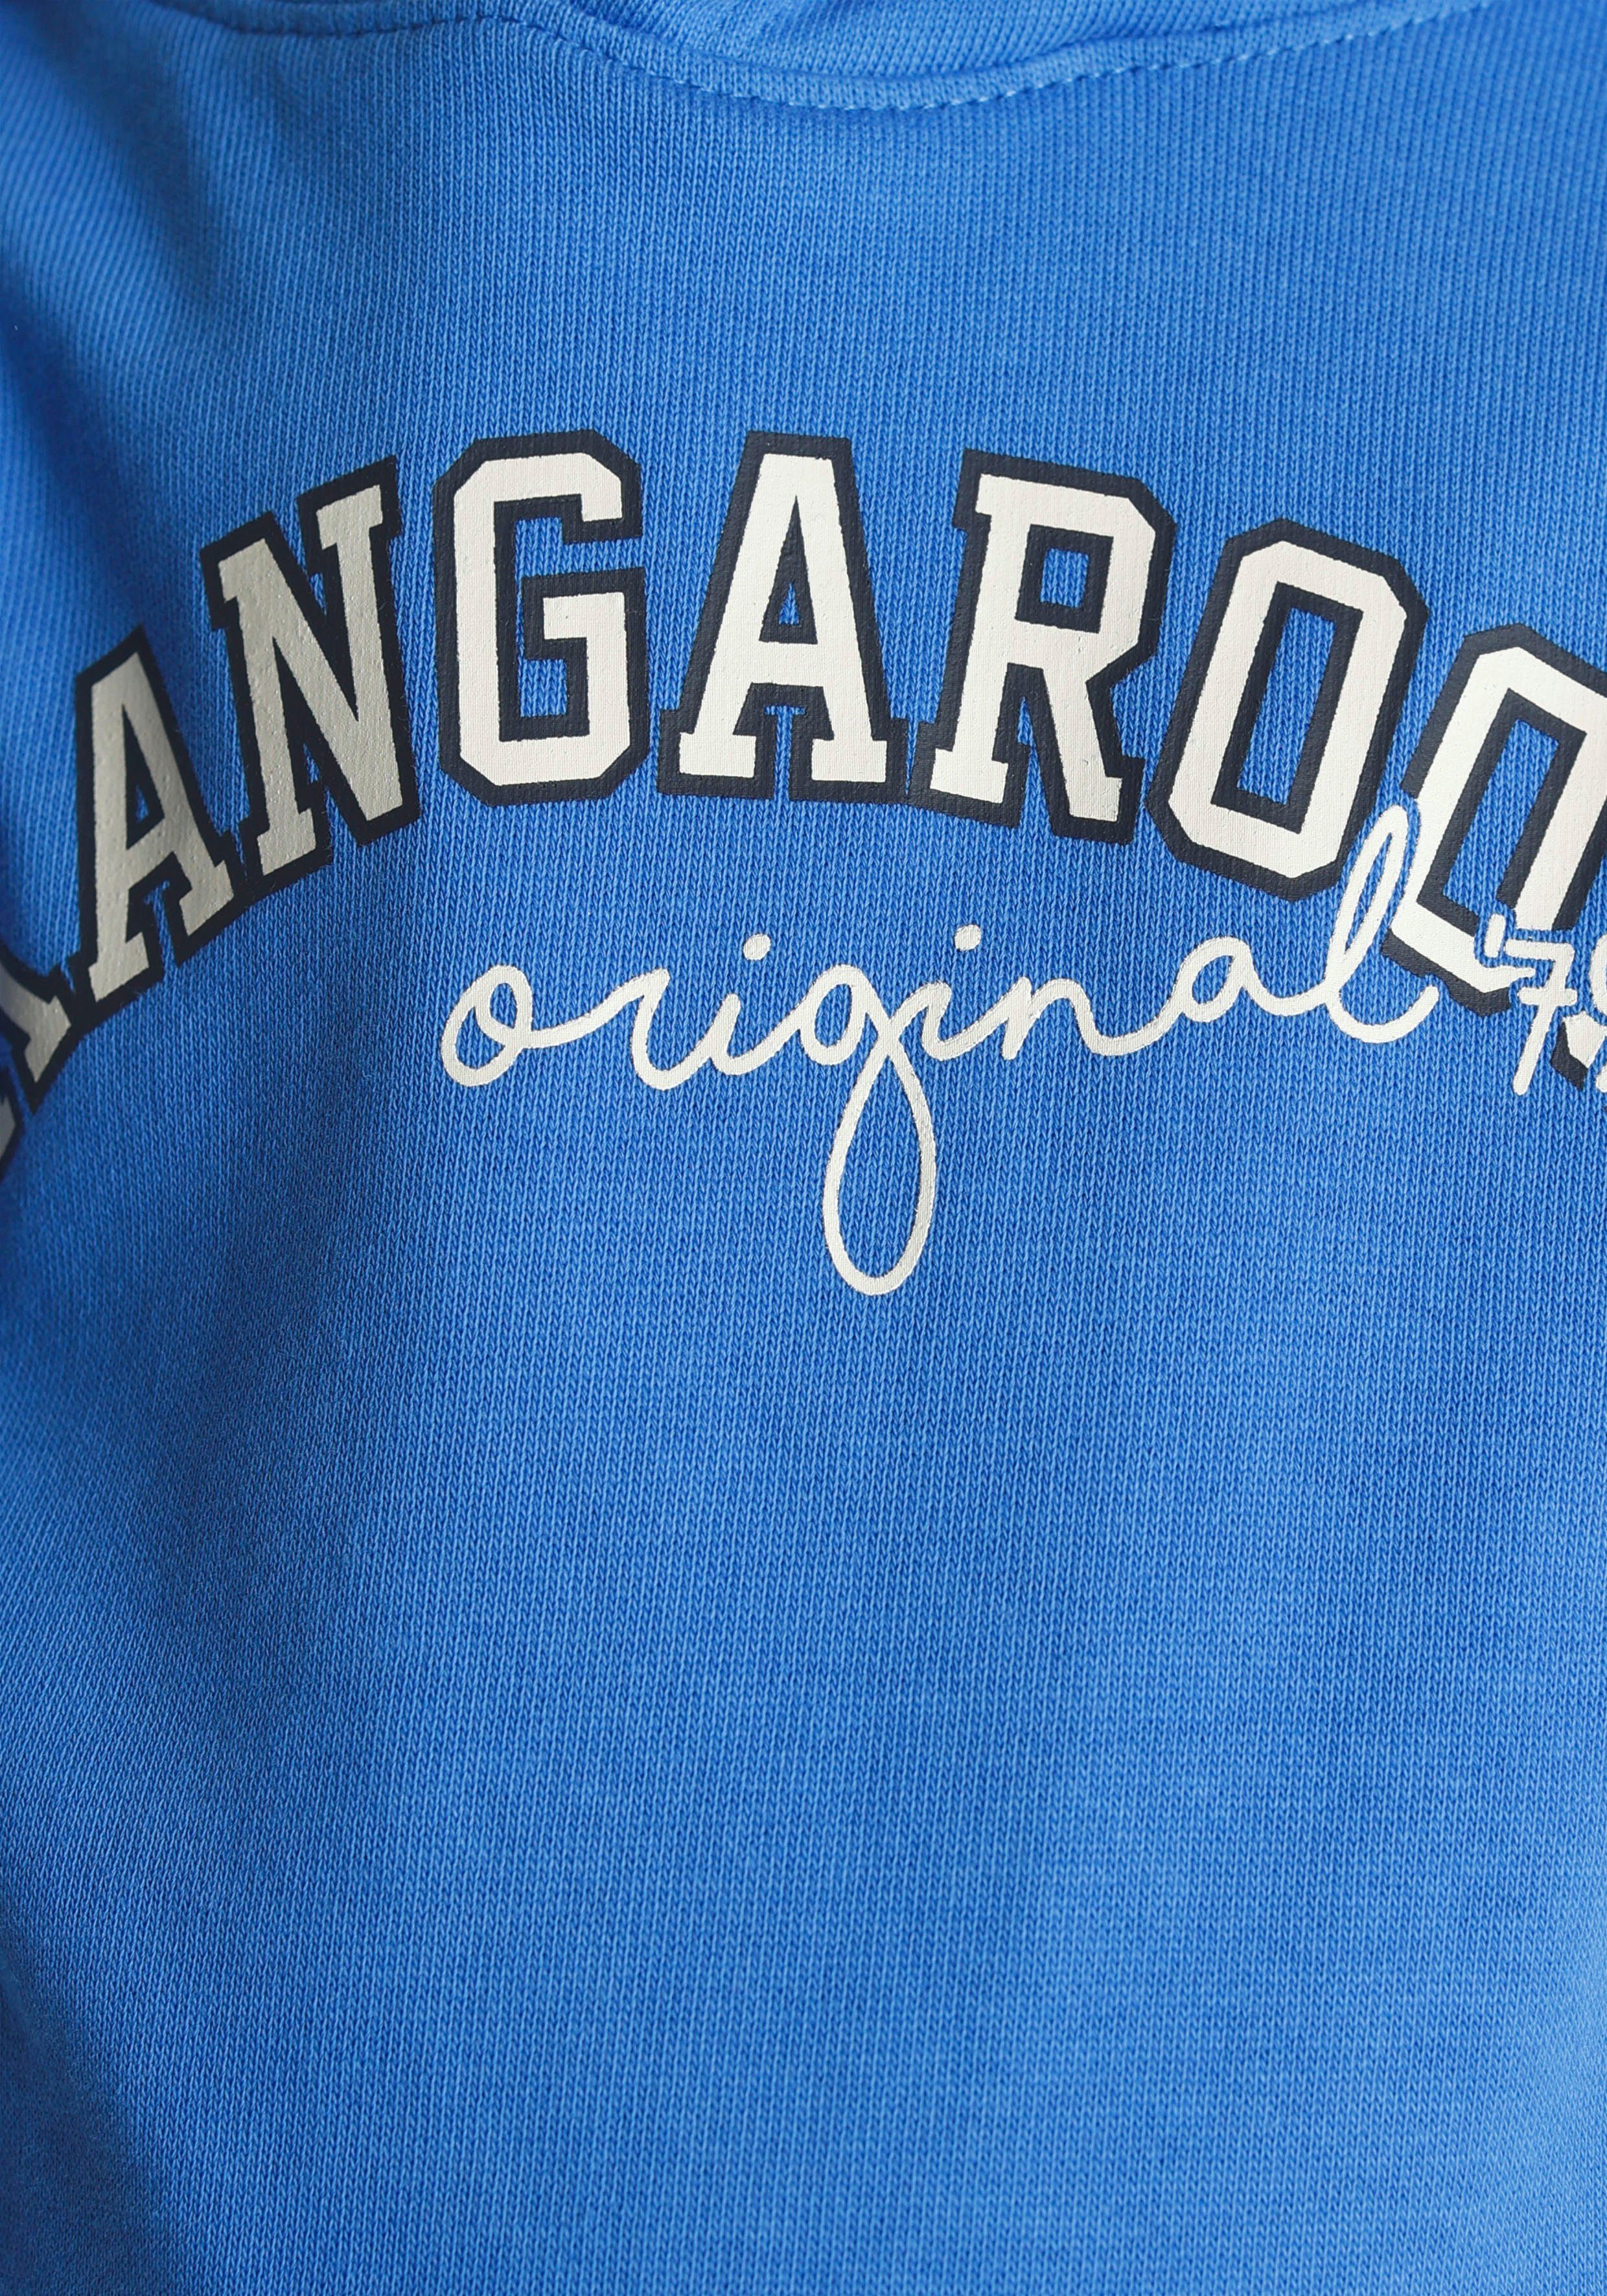 mit für KangaROOS Streifen Mini Kapuzensweatshirt Ärmeln, an Colorblocking, den Jungen